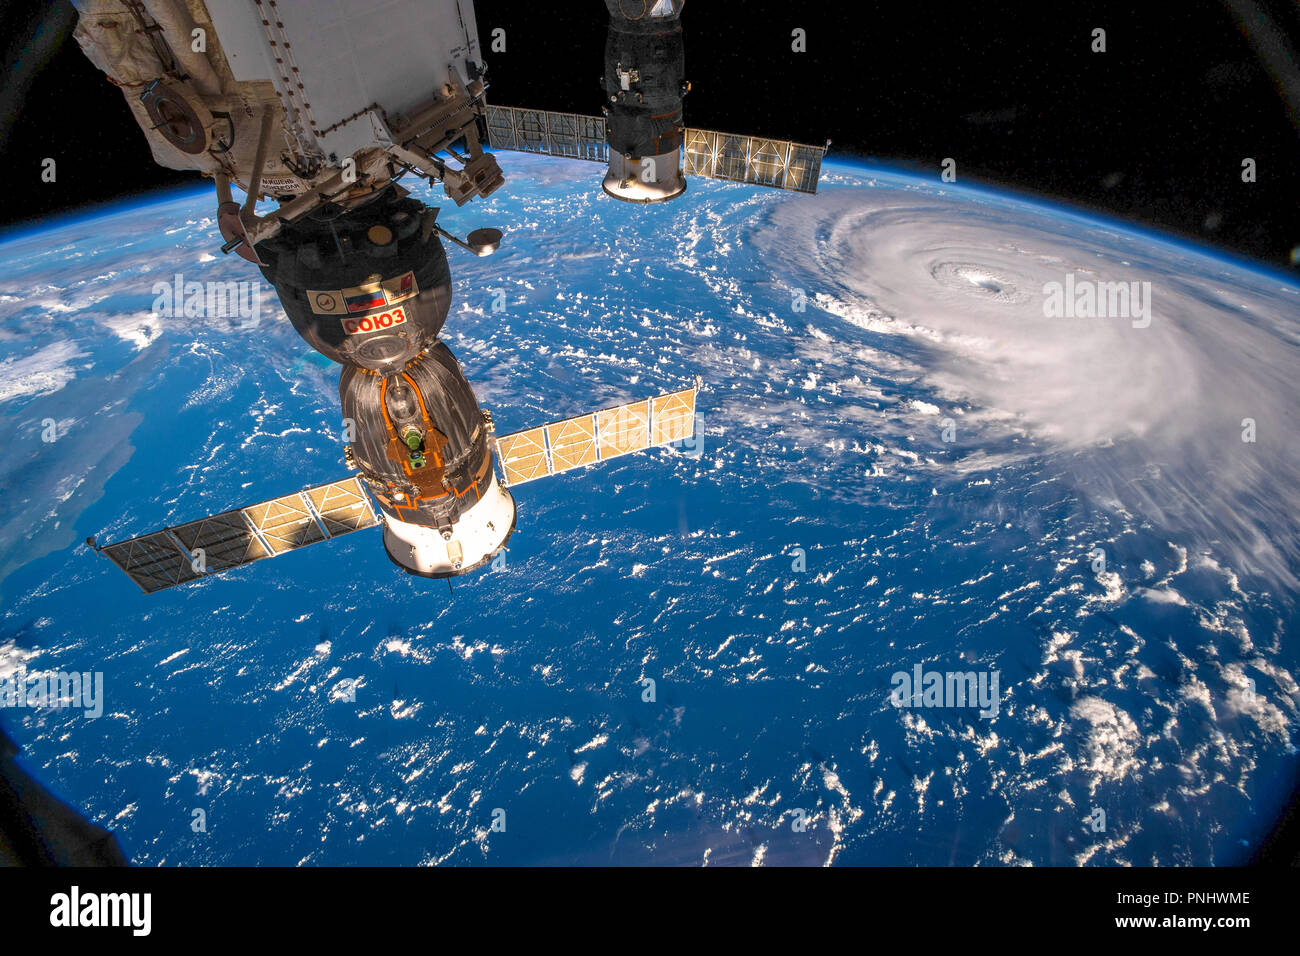 L'ouragan Florence vue de l'espace par l'ISS (Station spatiale internationale). Cette image est un document de la NASA. Banque D'Images